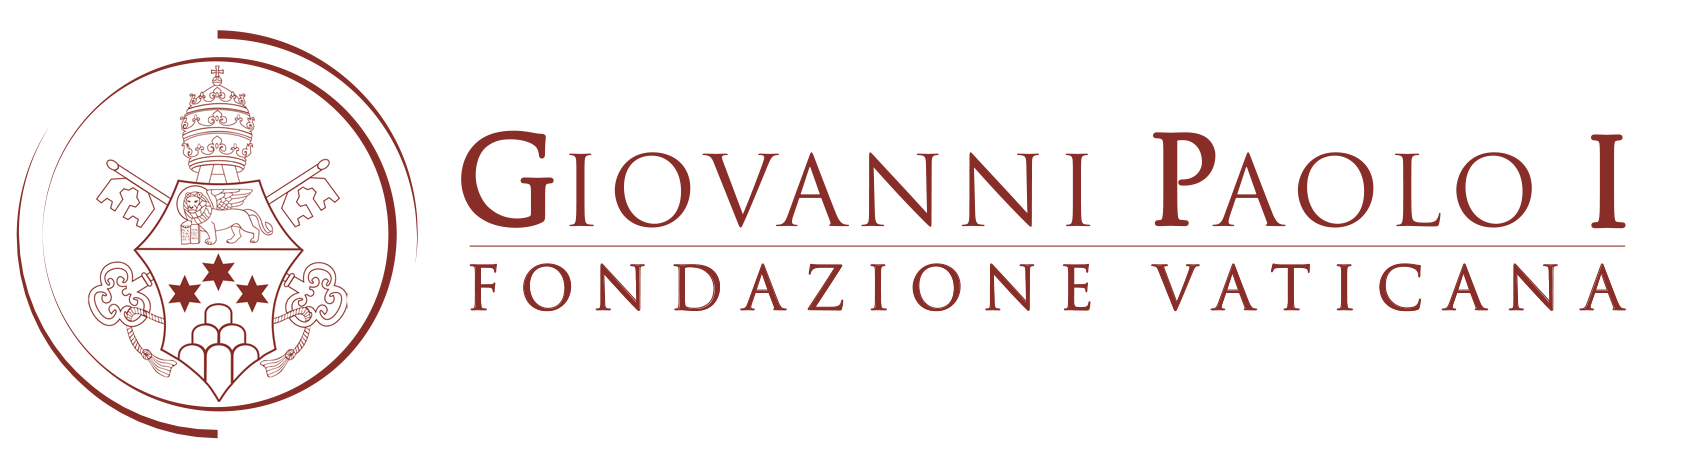 Fondazione Vaticana Giovanni Paolo I